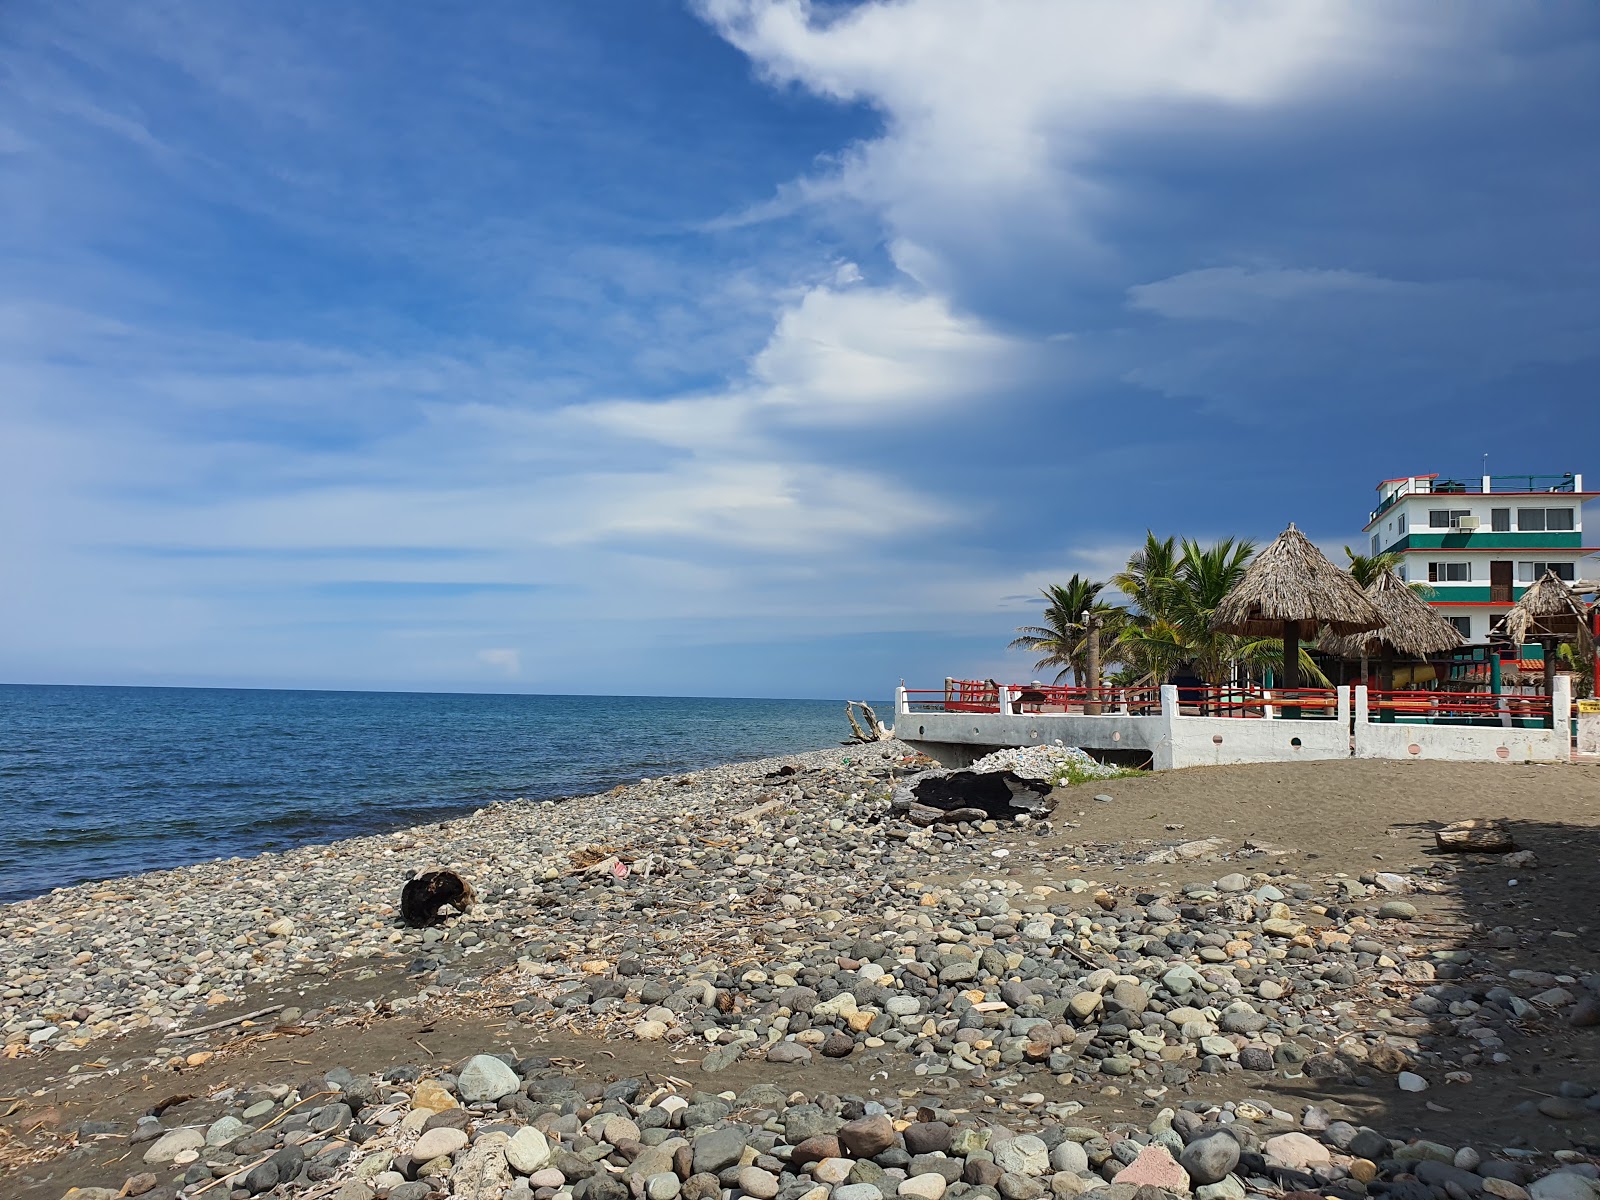 Playa Lechuguillas'in fotoğrafı gri çakıl taşı yüzey ile